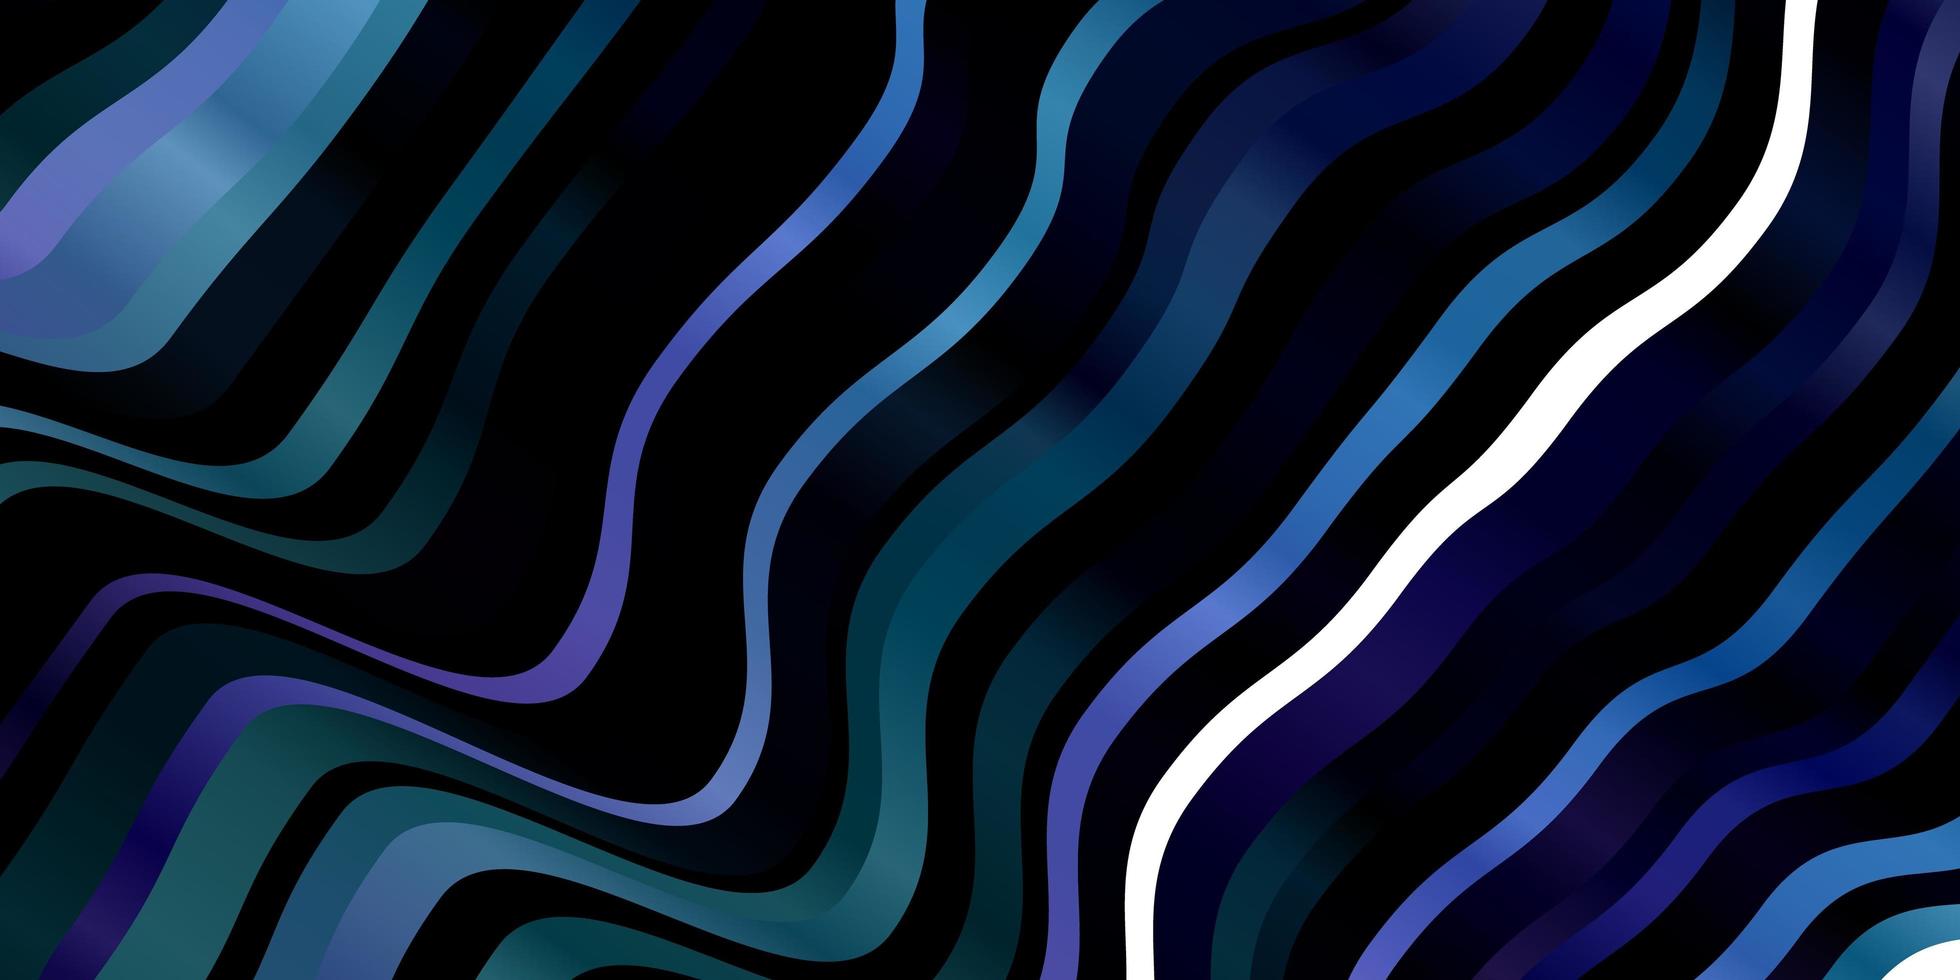 mörkrosa, blå vektormönster med böjda linjer. vektor